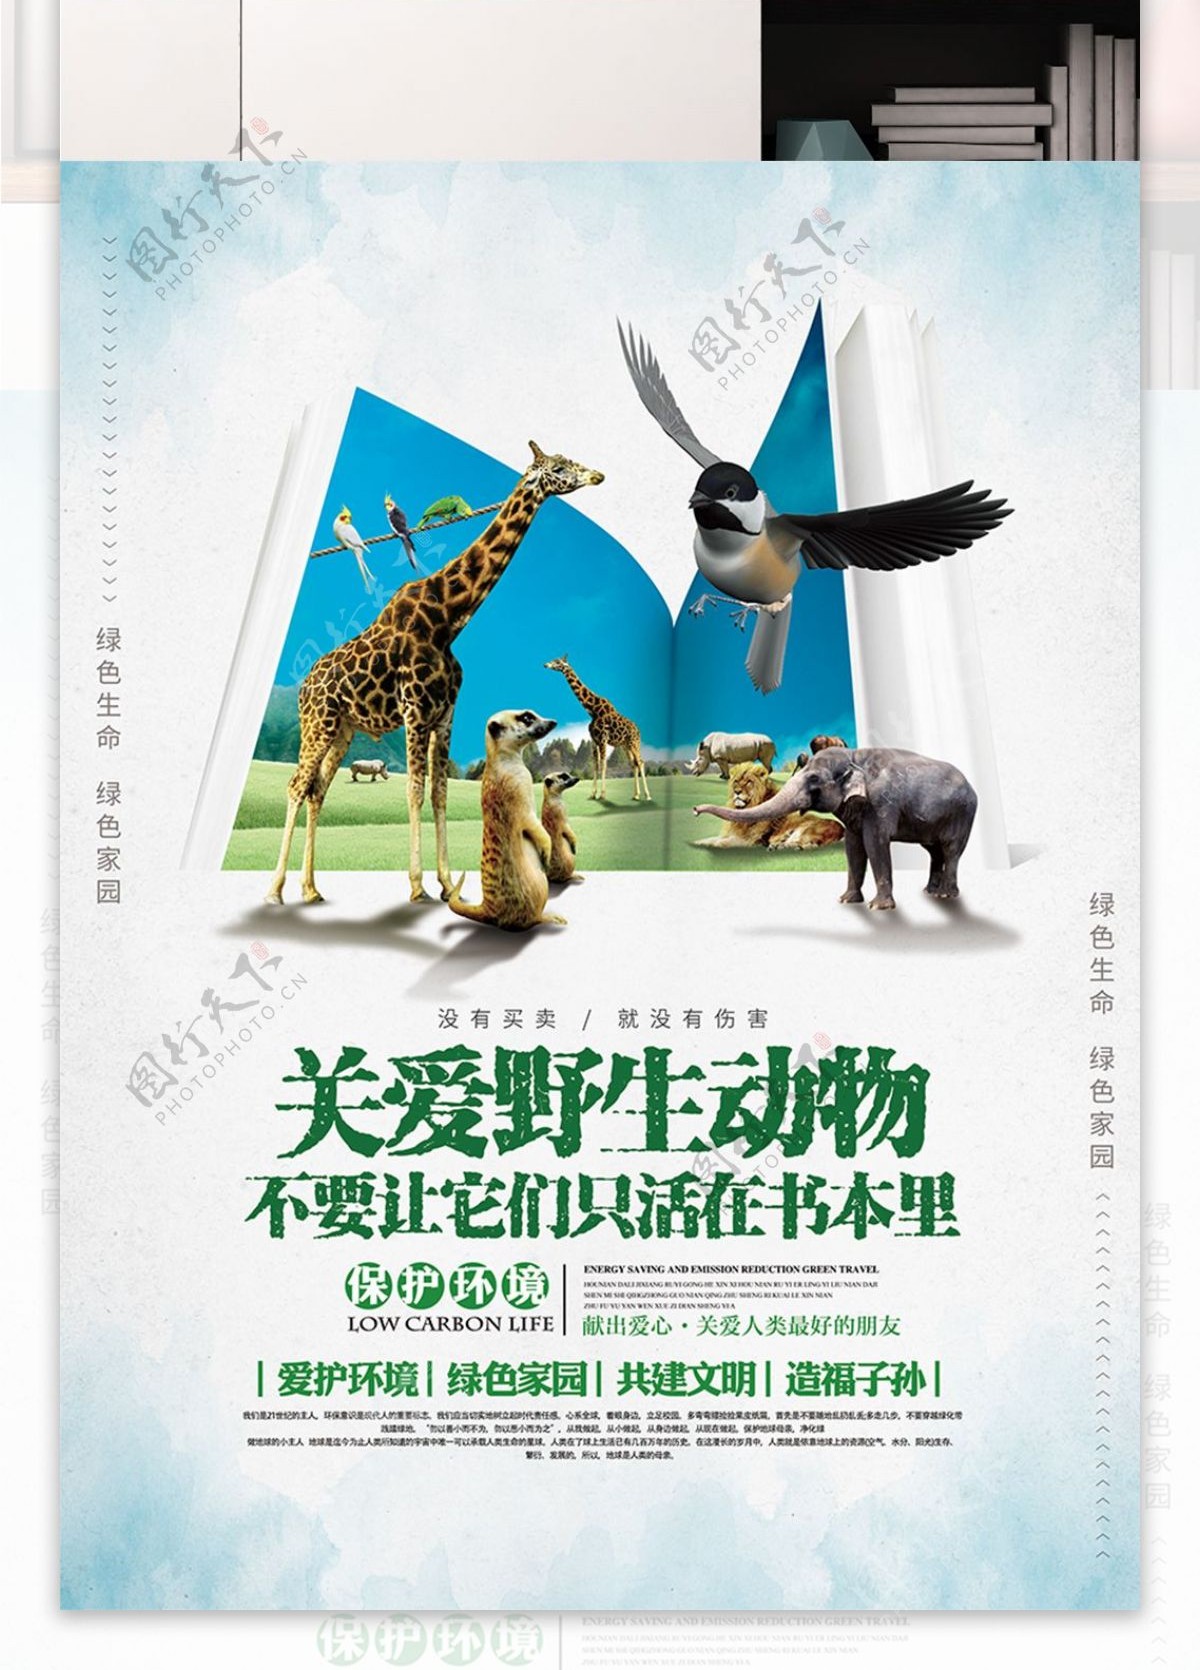 清新自然公益保护野生动物宣传海报展板